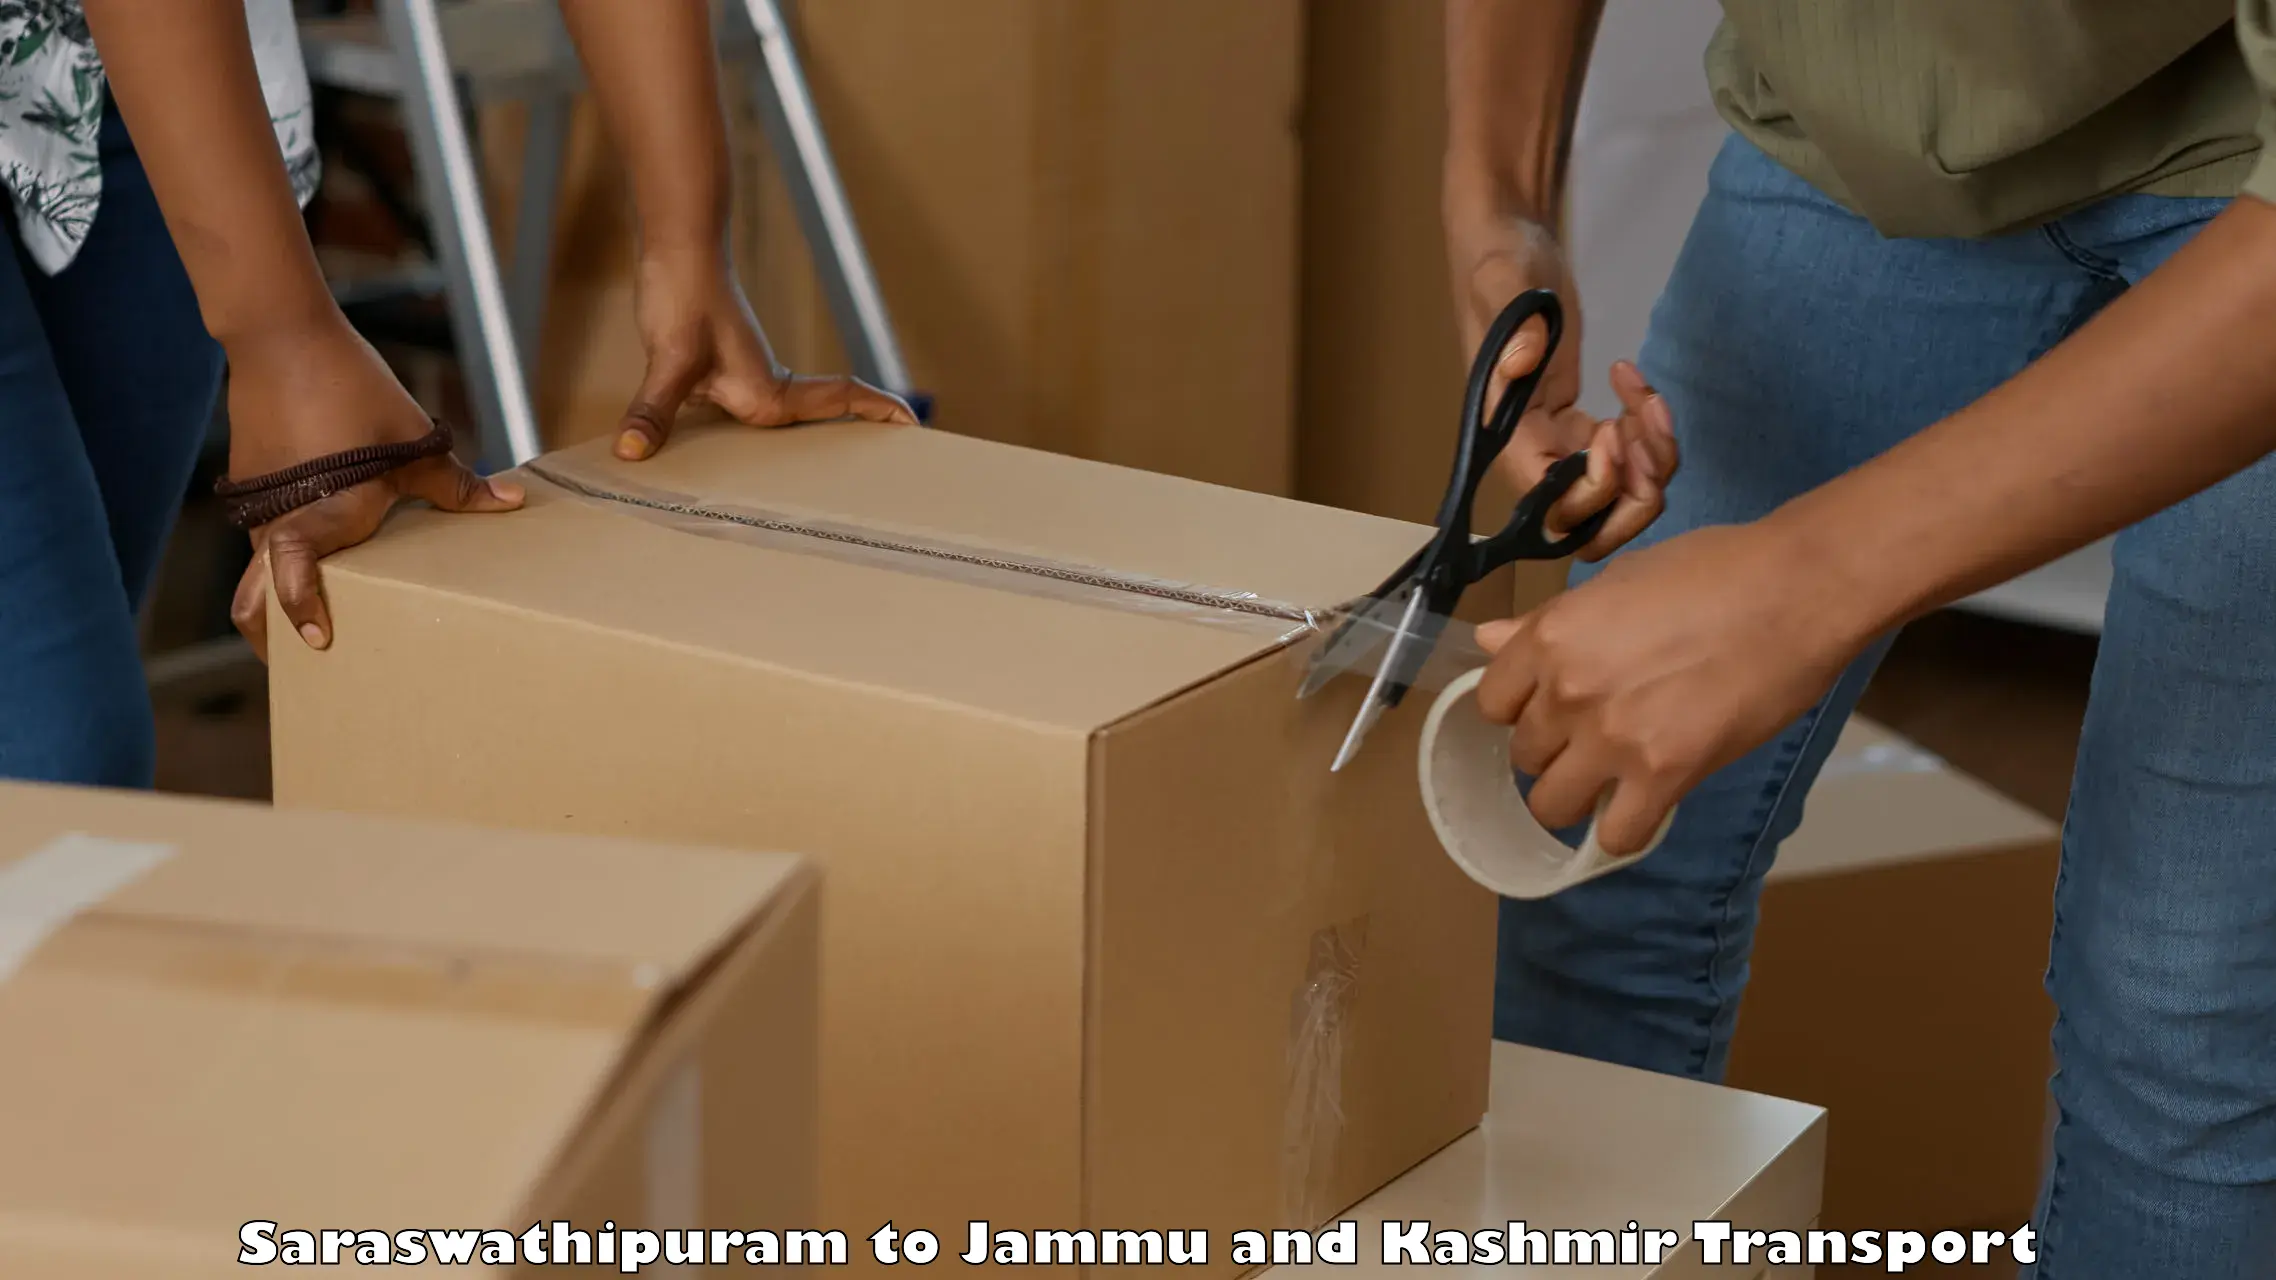 Furniture transport service Saraswathipuram to Billawar